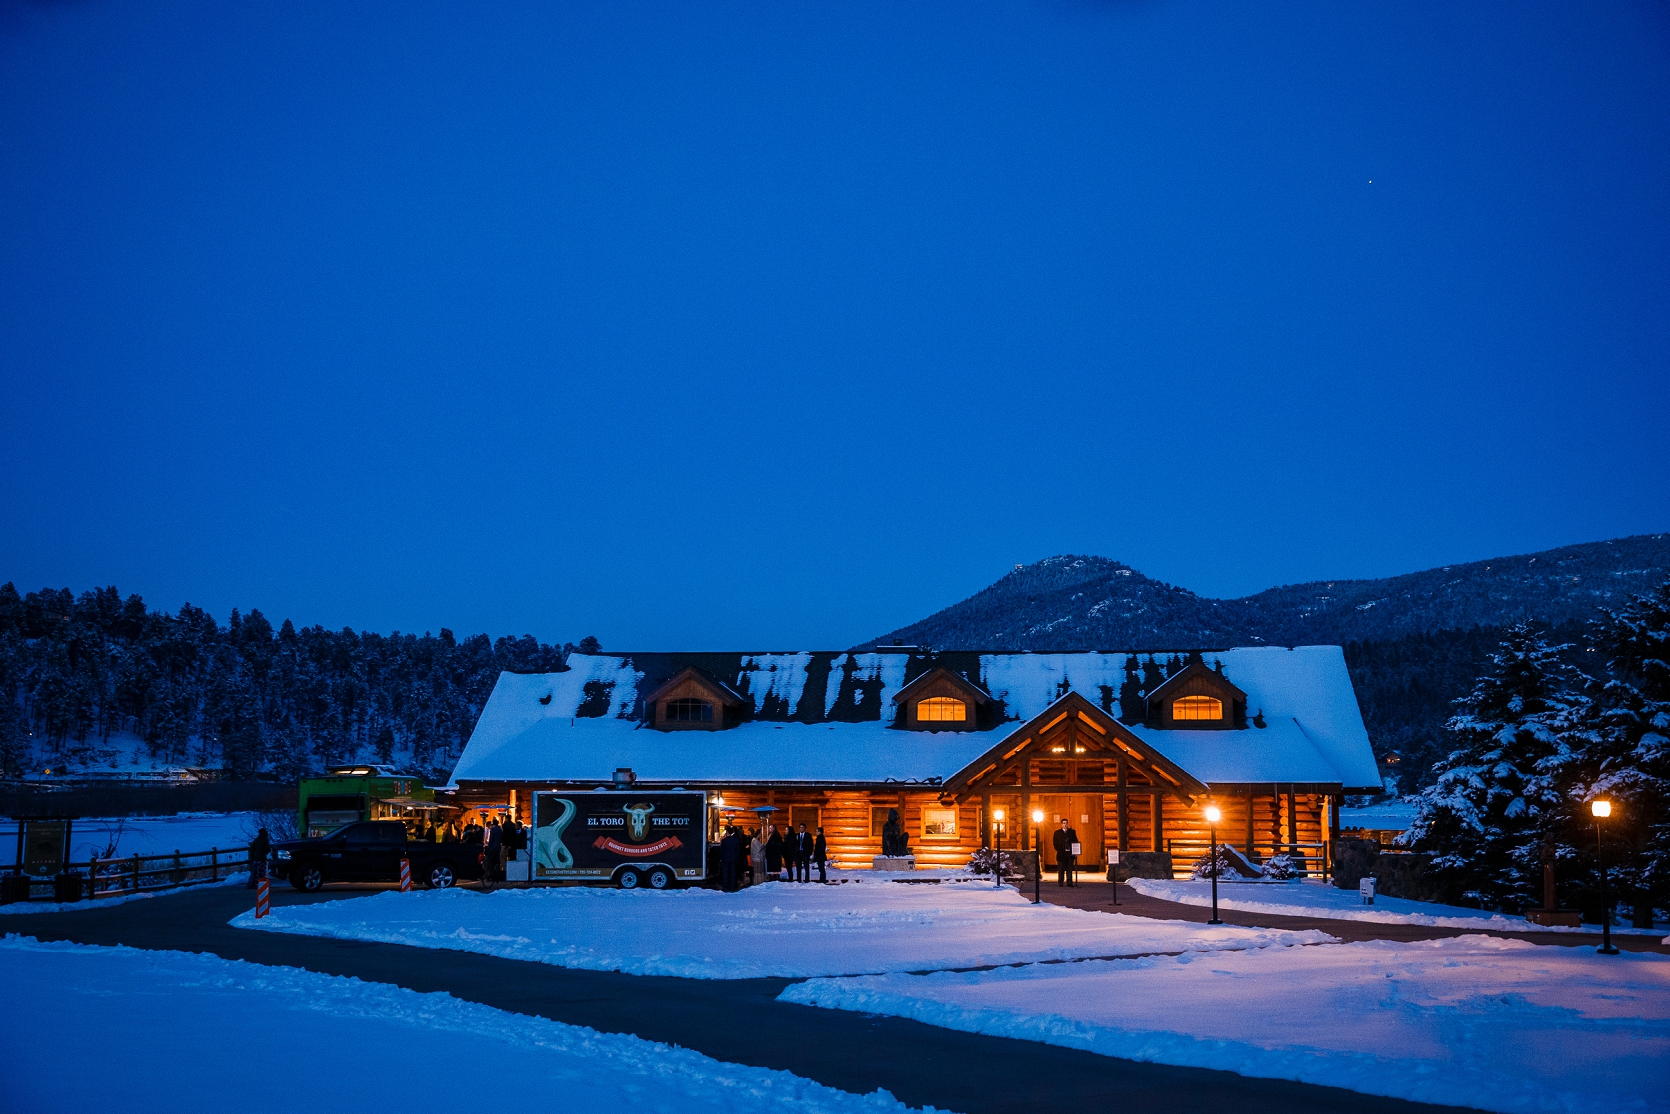 Colorado winter wedding venue decor